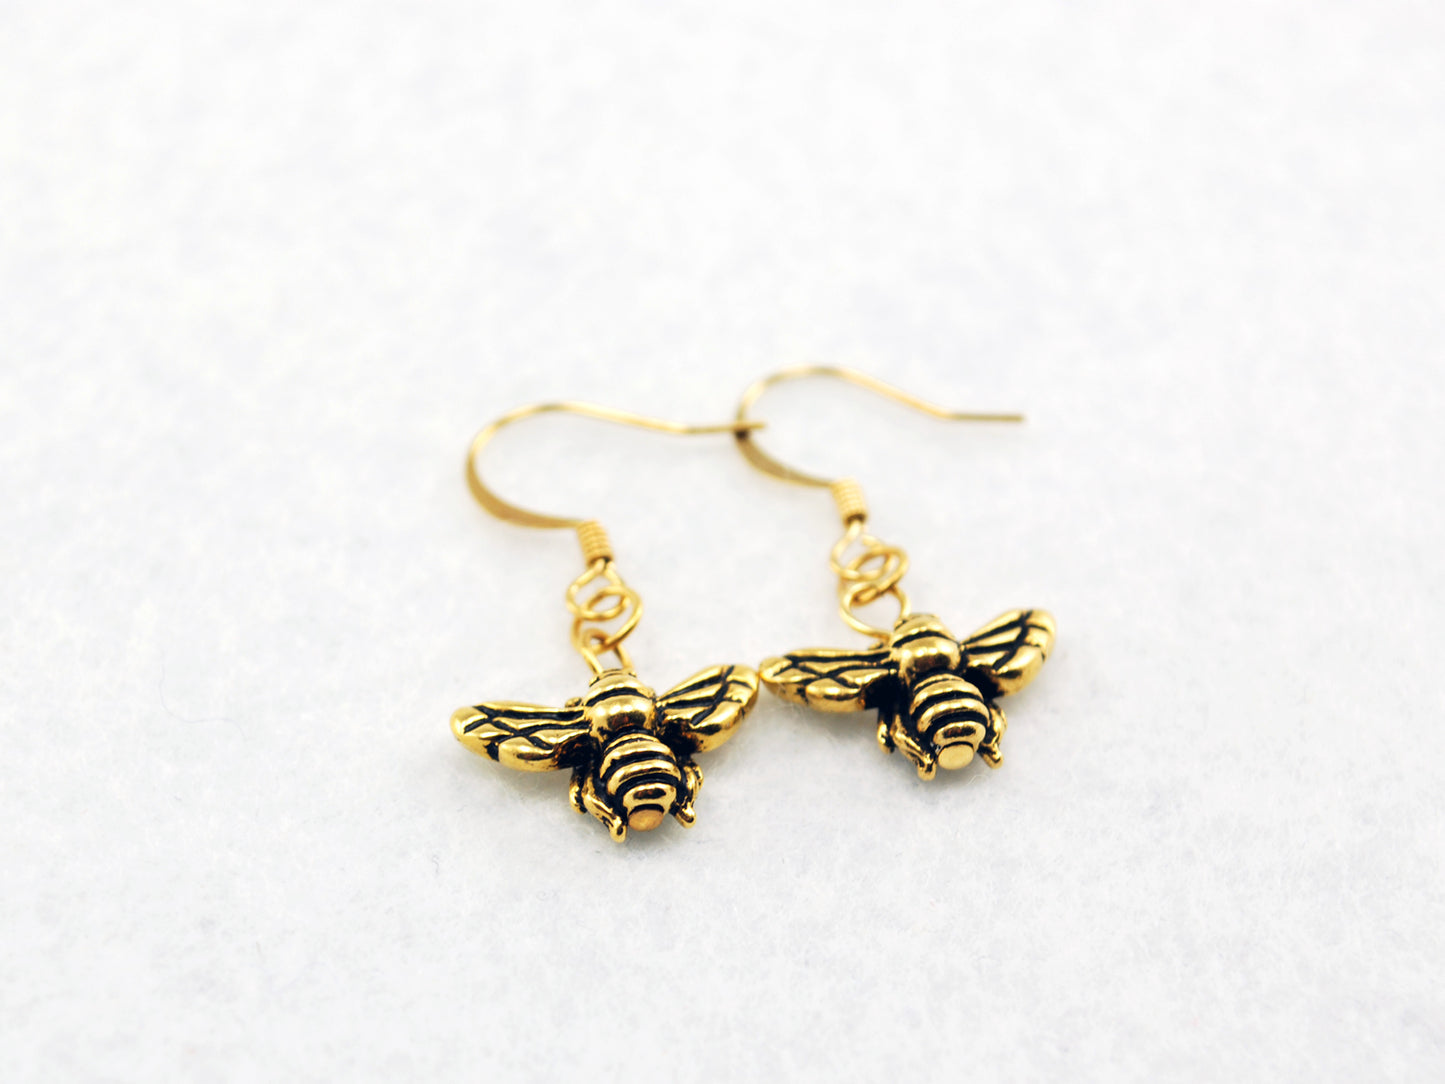 Bee Earrings in Gold